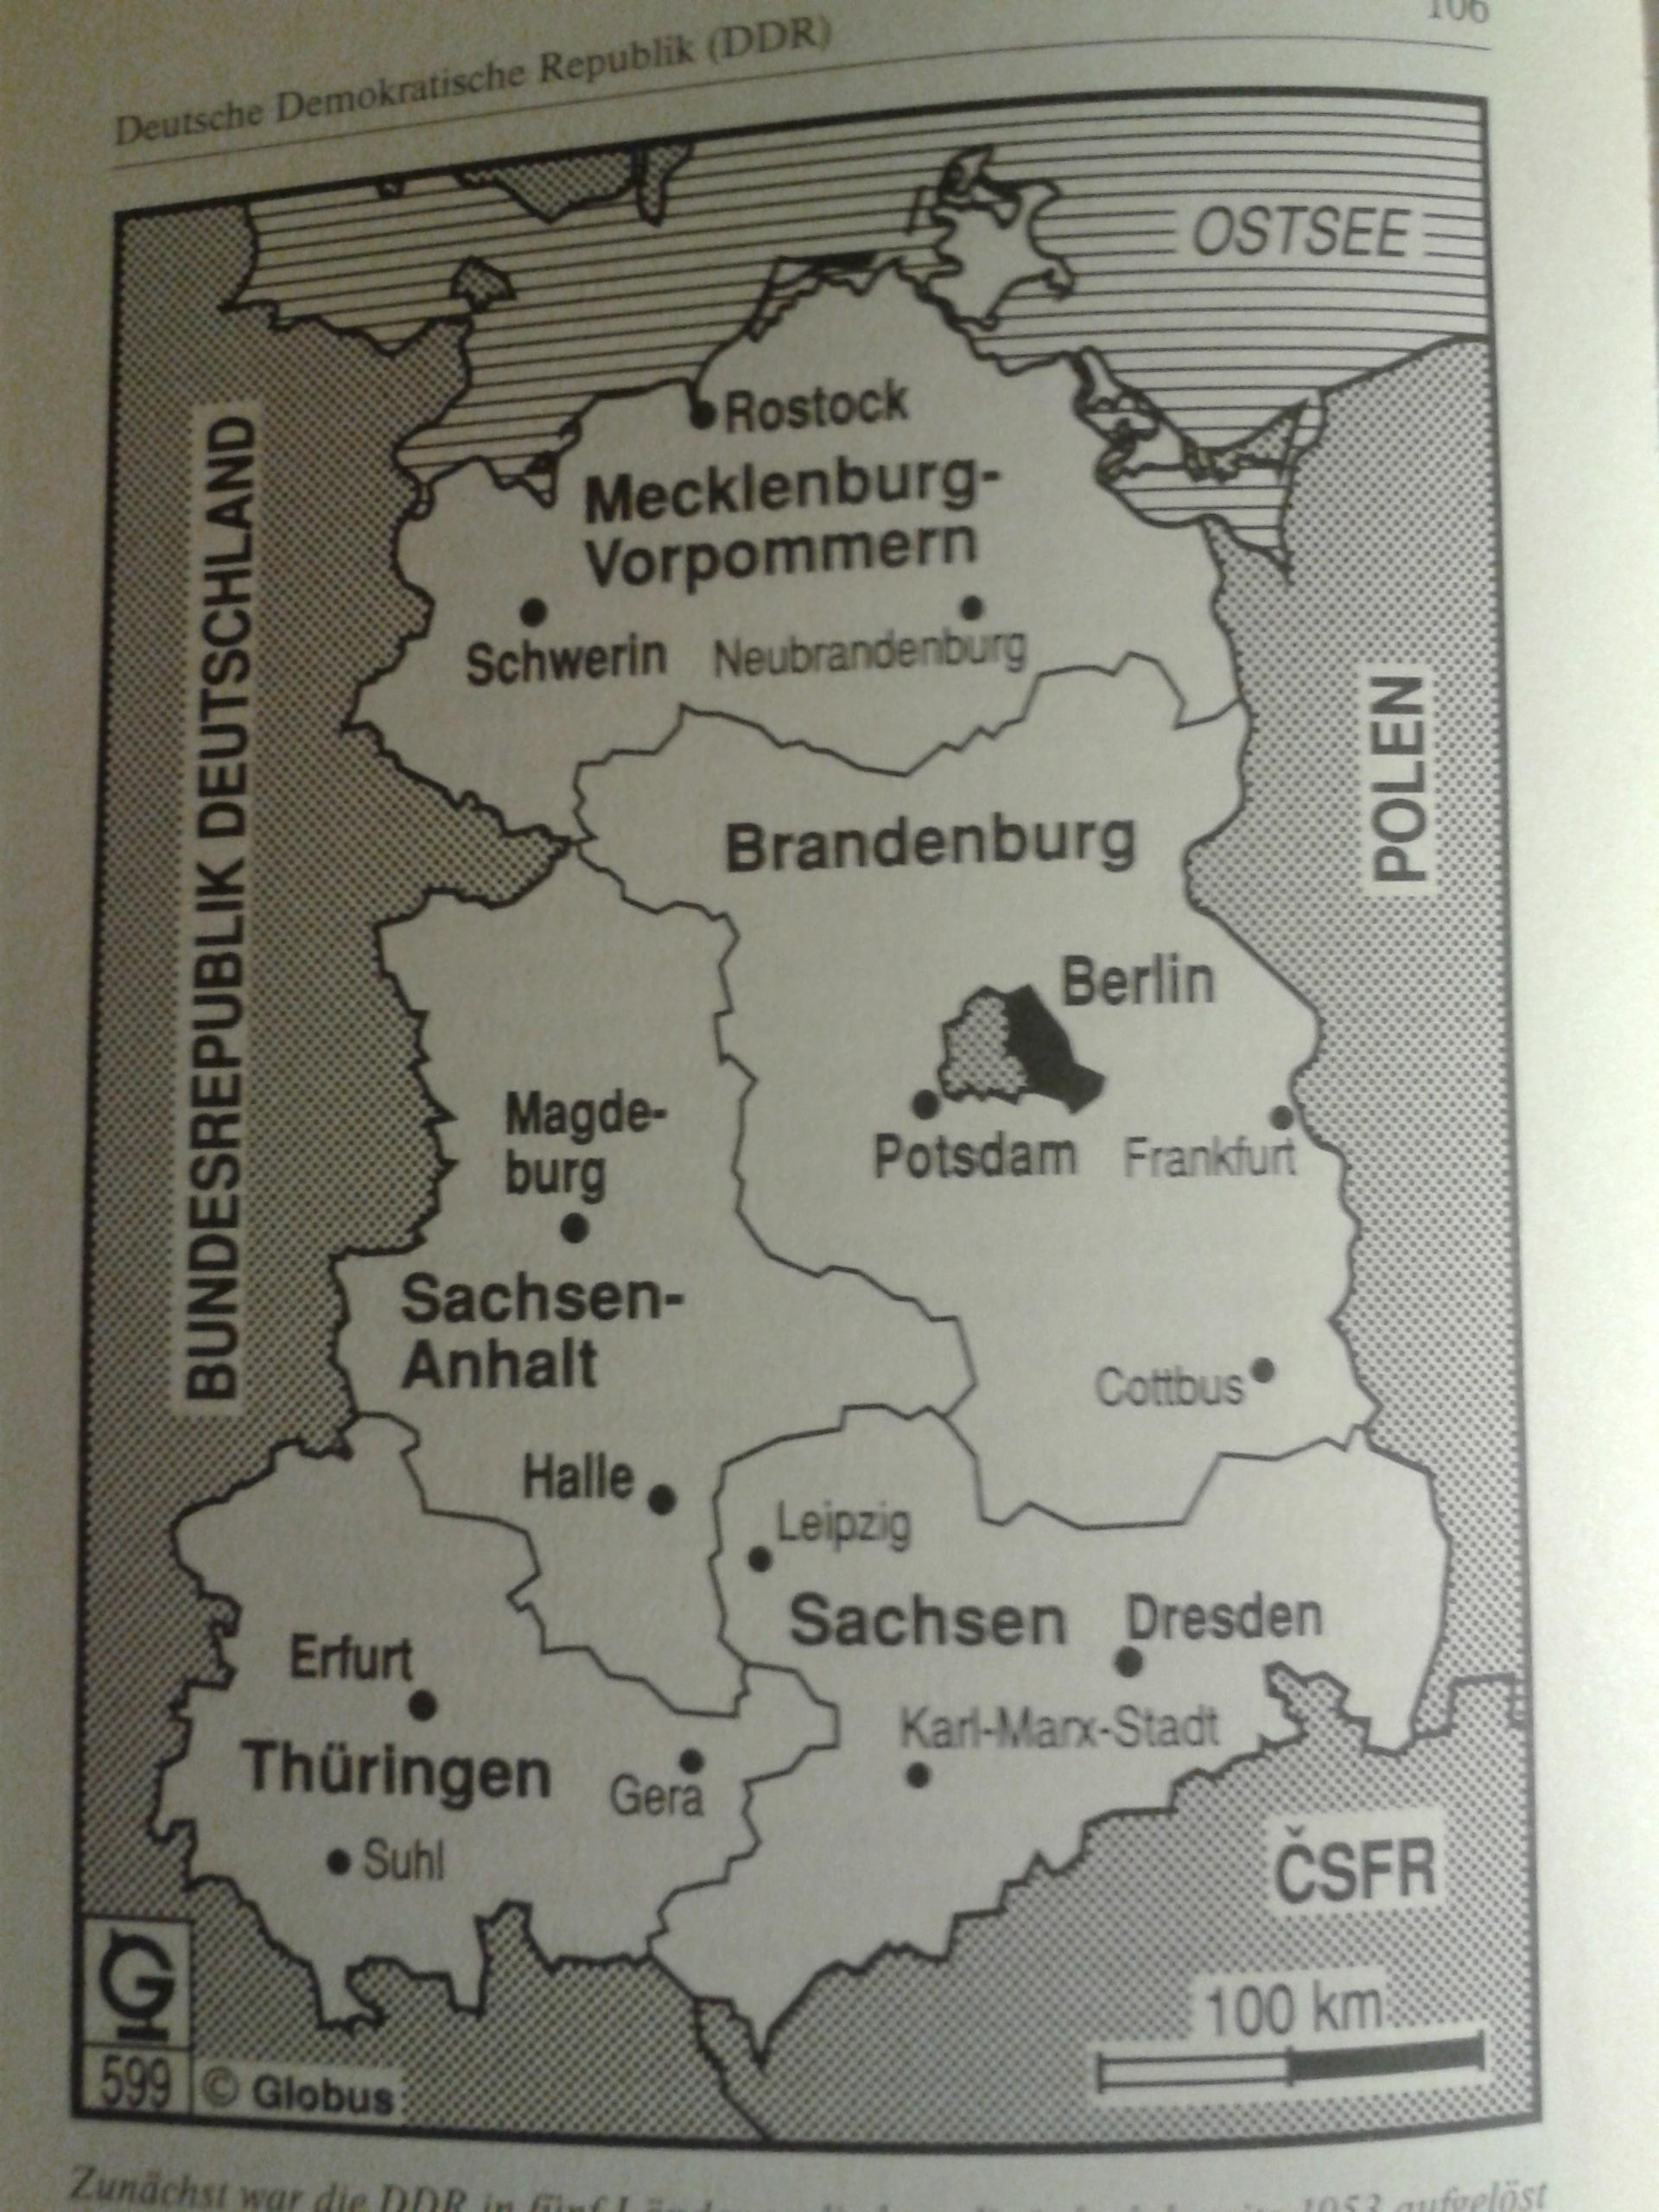 Zunächst war die DDR in fünf Länder aufgegliedert, die jedoch bereits 1953 aufgelöst und durch 14 Bezirke ersetzt wurden. Die Hauptstadt der Deutschen Demokratischen Republik, Berlin hatte einen Sonderstatus.